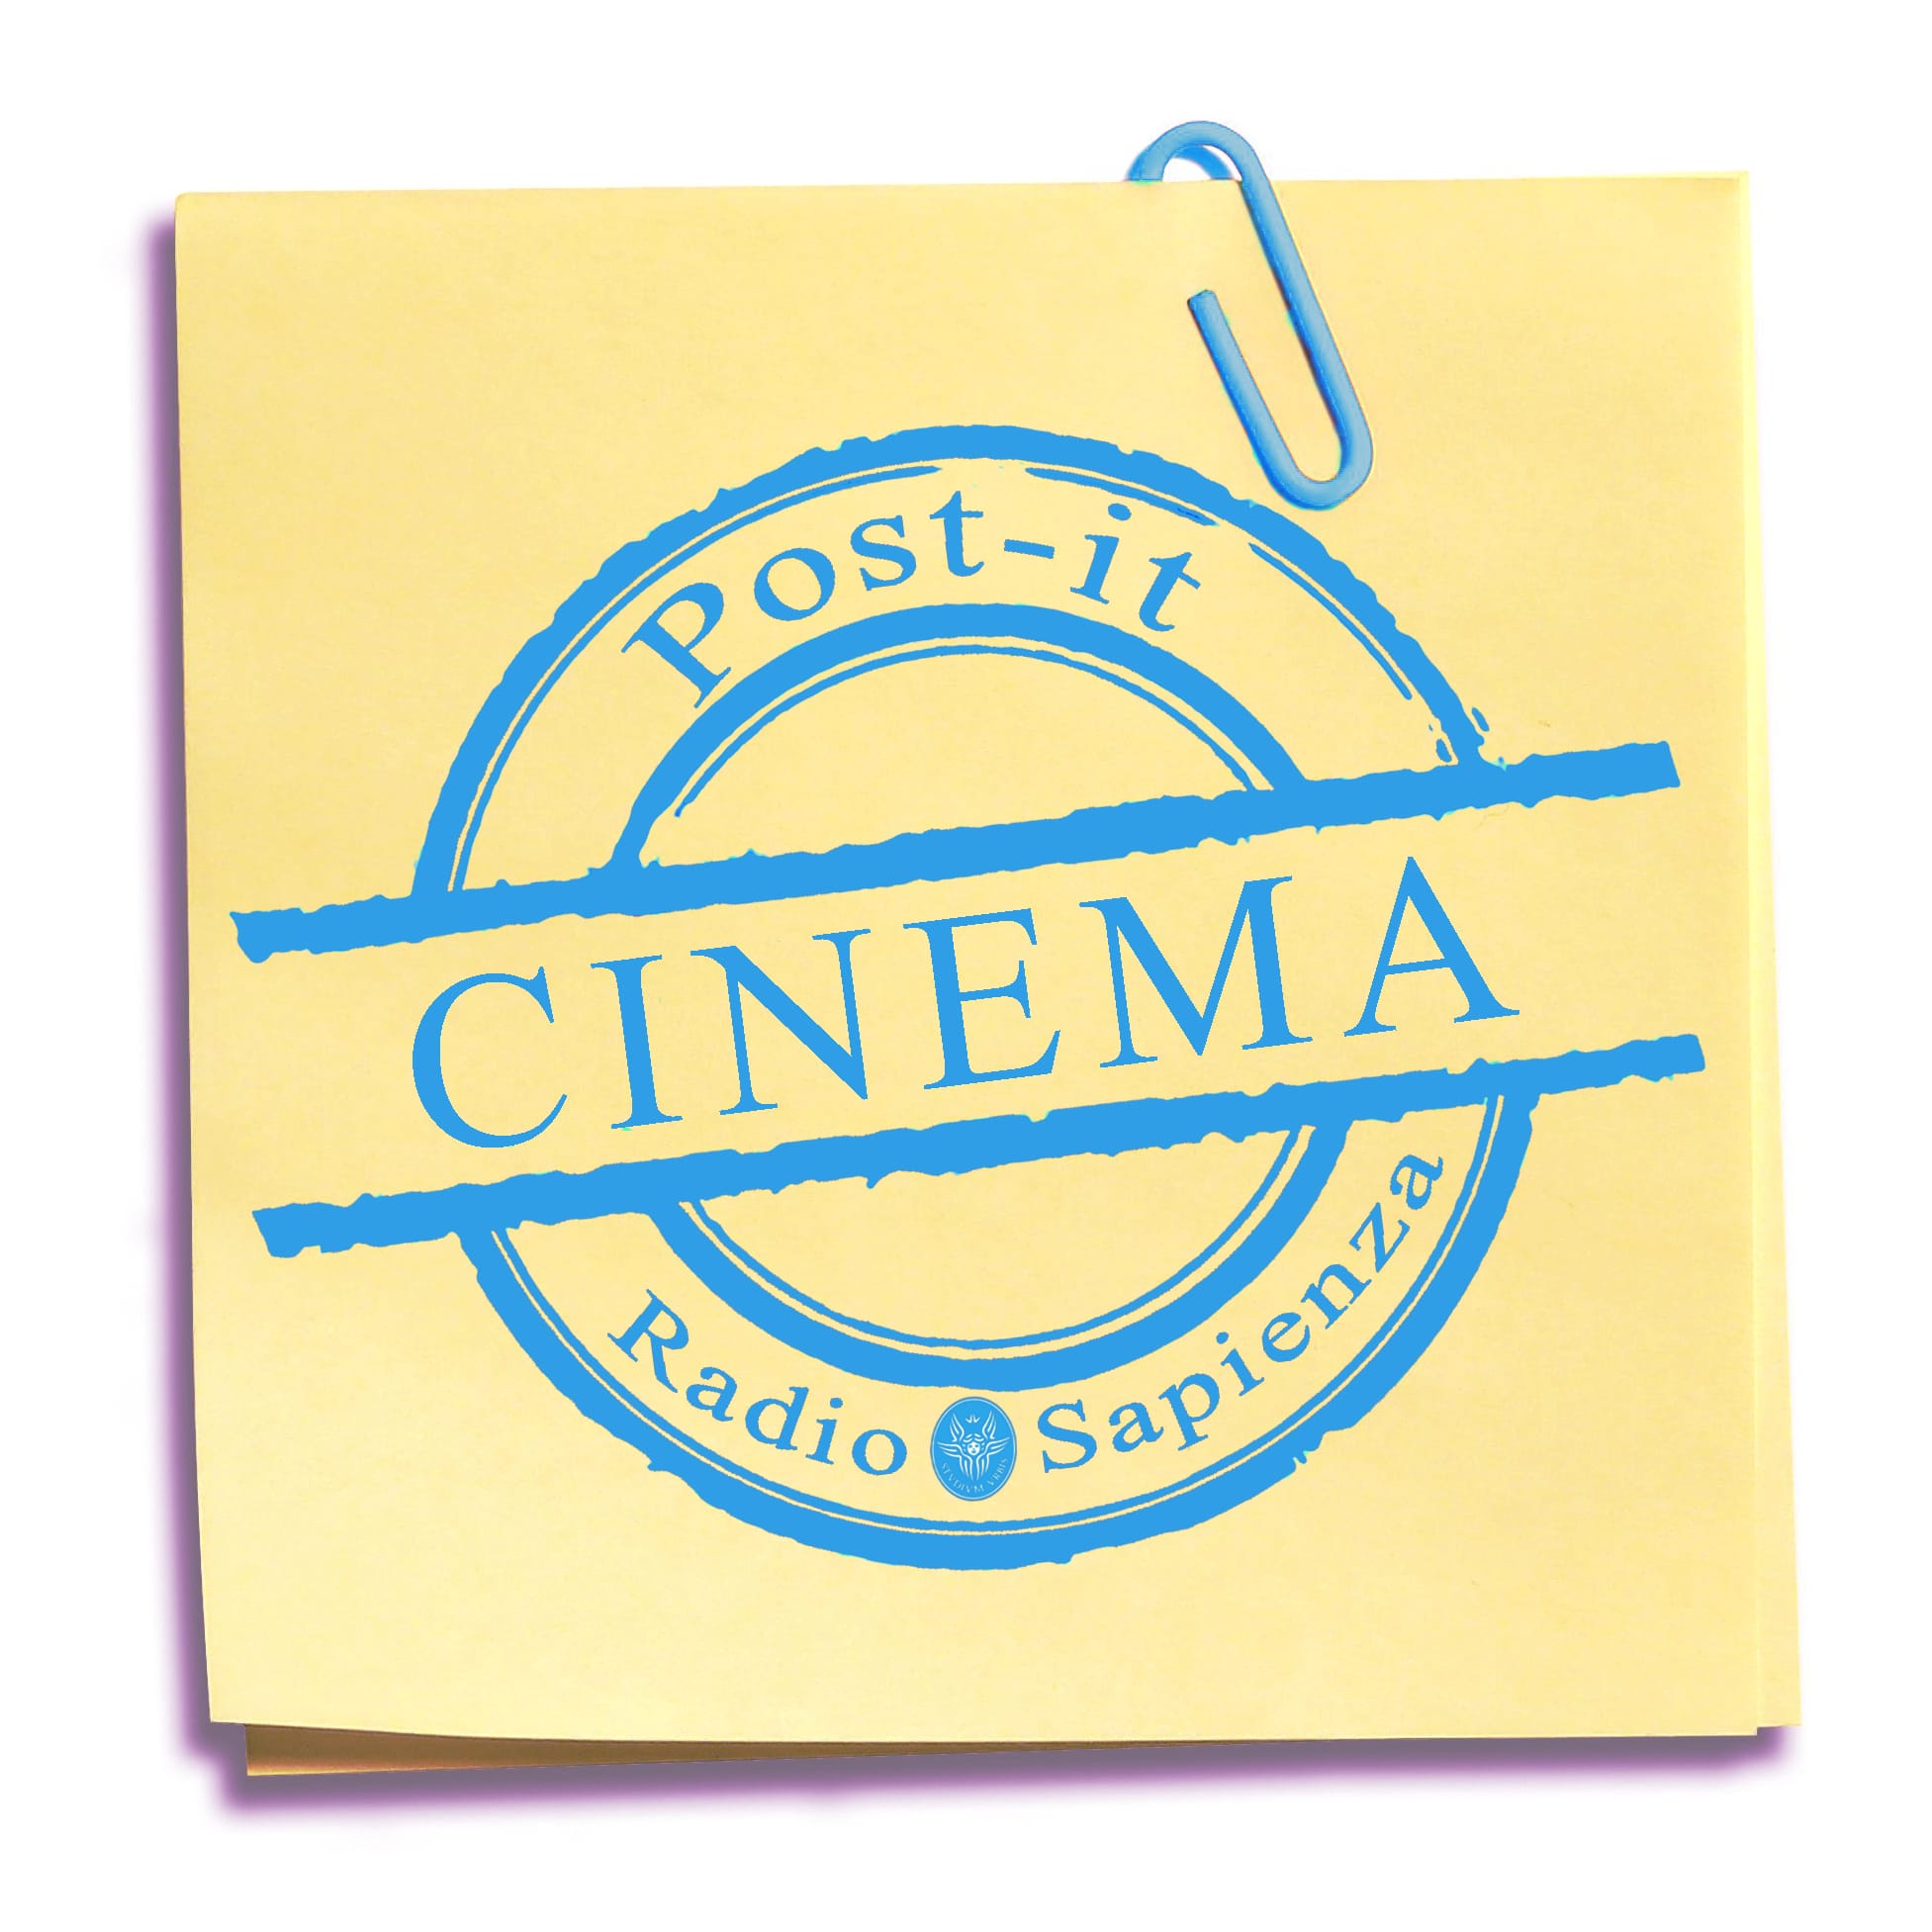 Post-it Cinema – Venerdì 26 Novembre